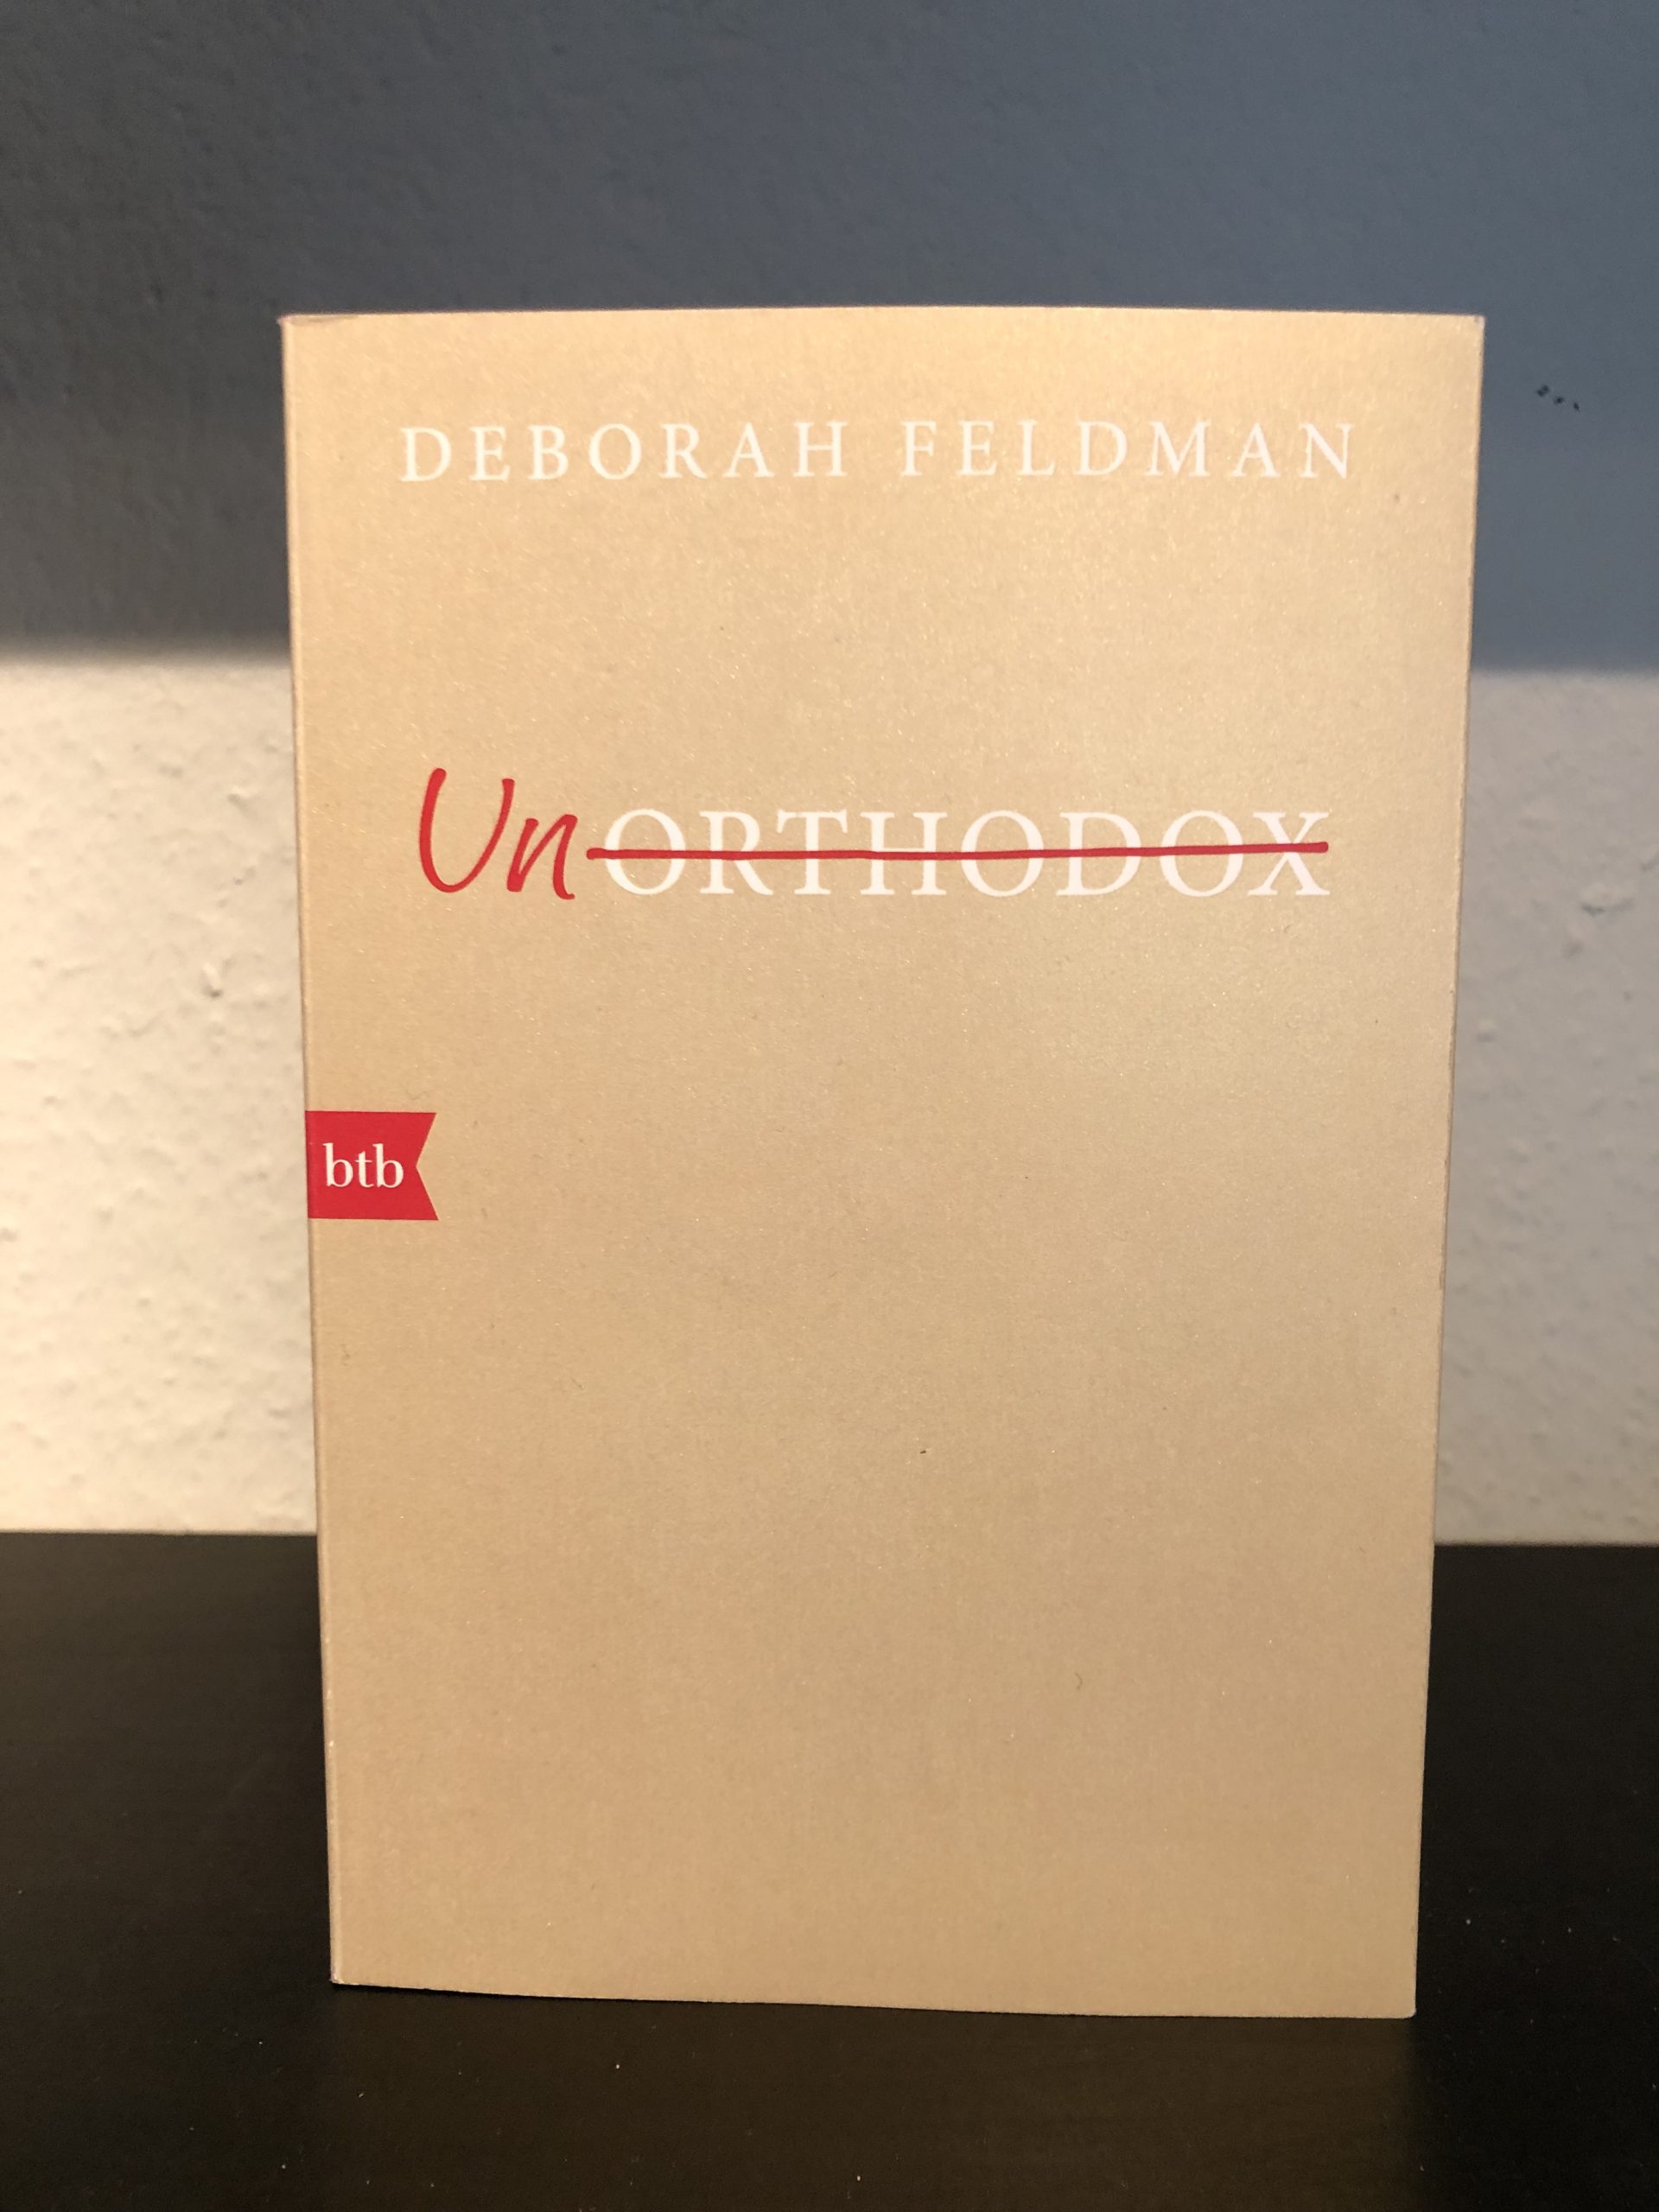 Unorthodox - Deborah Feldman main image